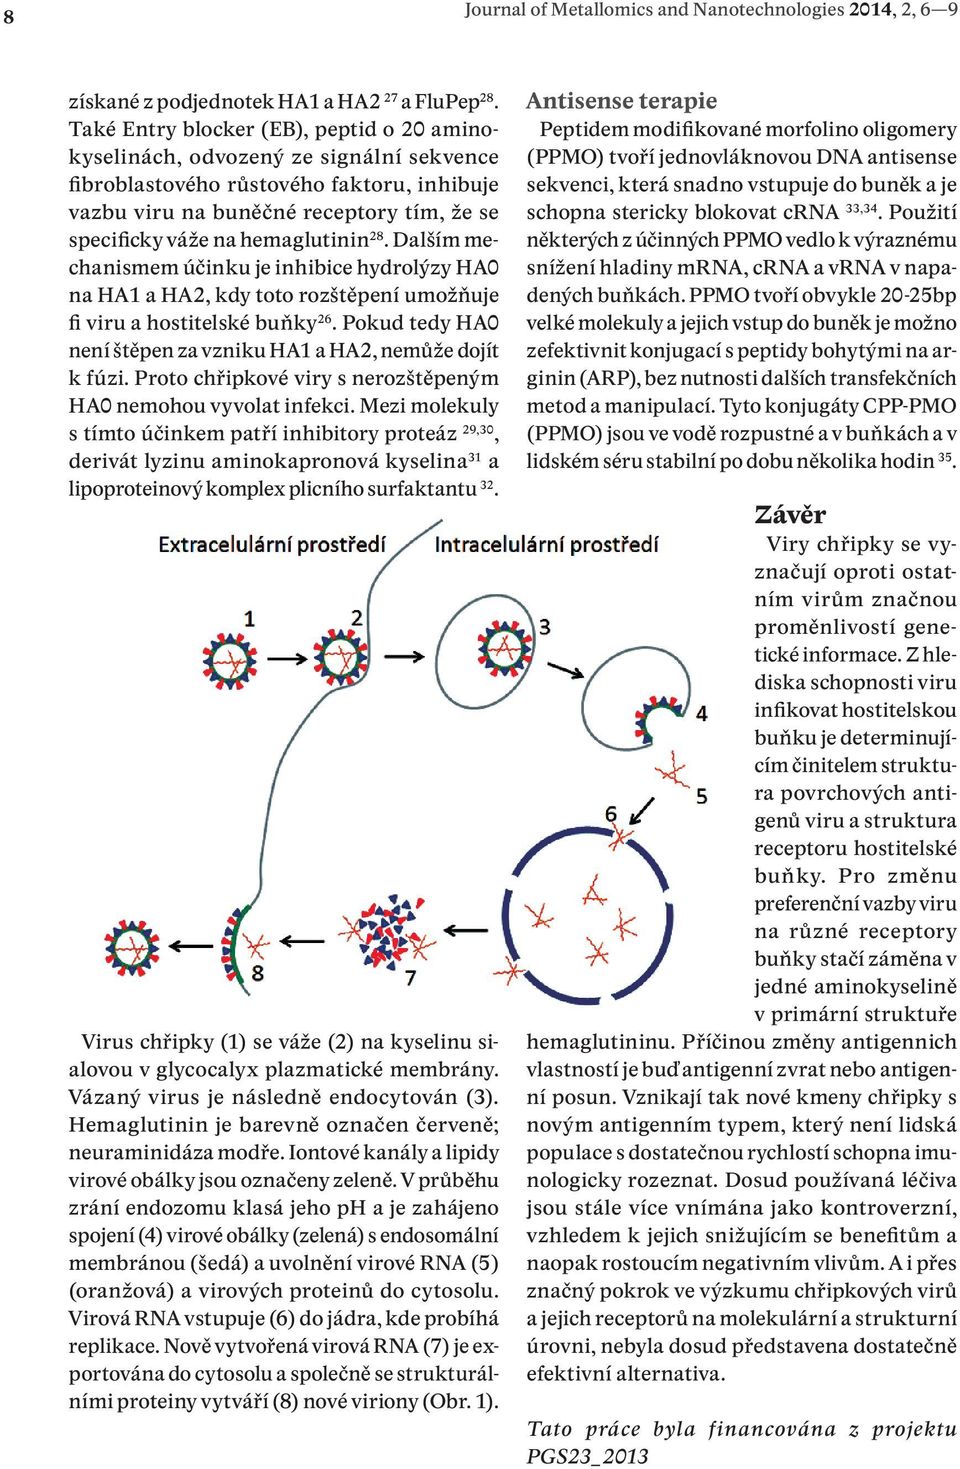 hemaglutinin 28. Dalším mechanismem účinku je inhibice hydrolýzy HA0 na HA1 a HA2, kdy toto rozštěpení umožňuje fi viru a hostitelské buňky 26.